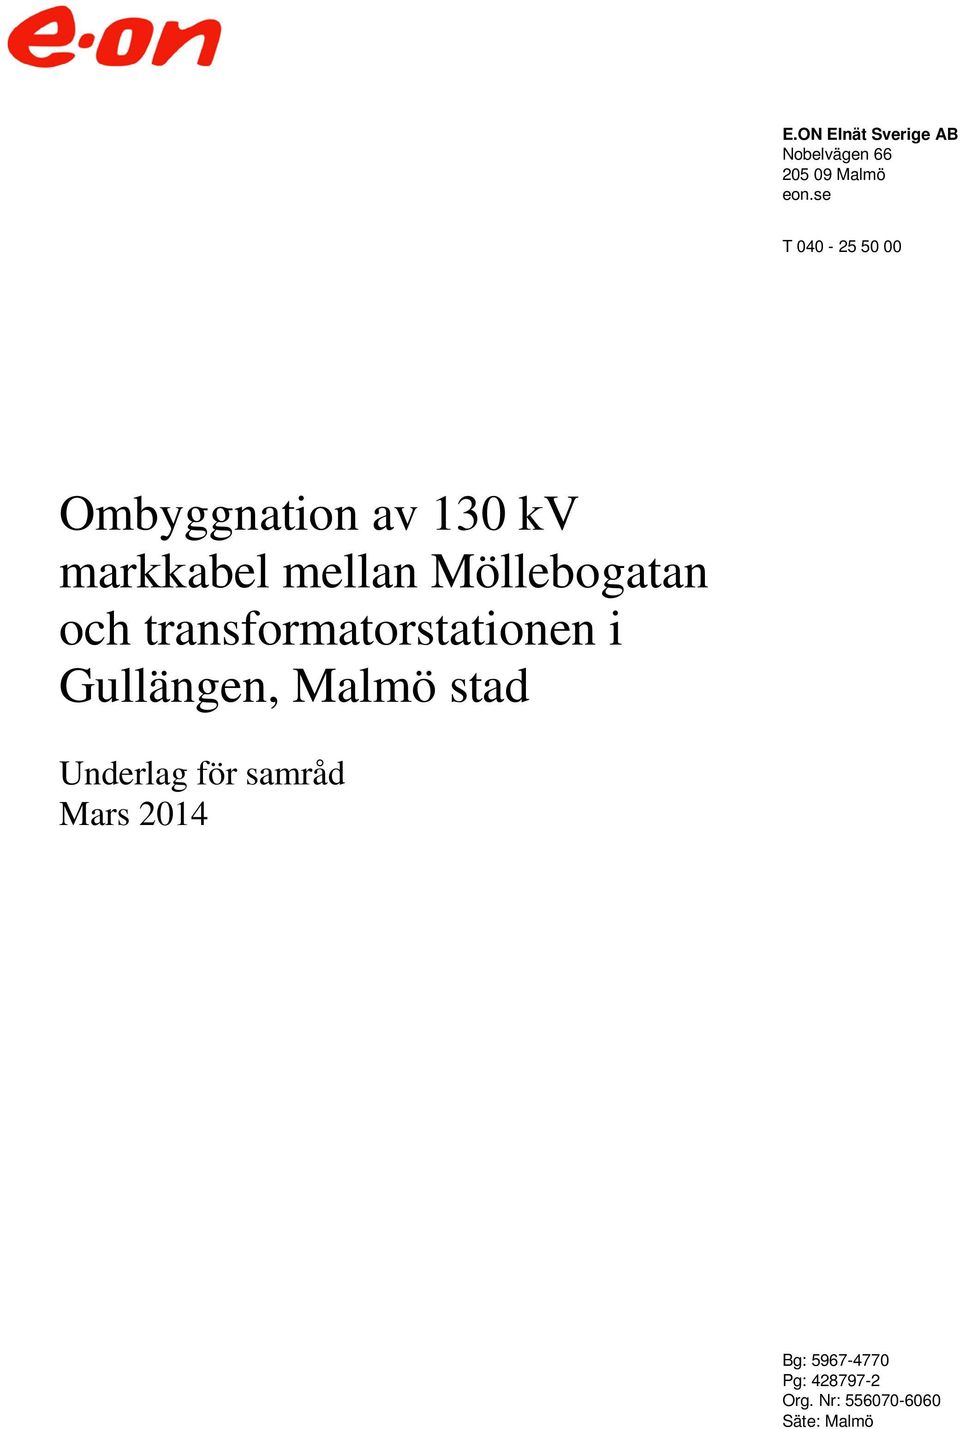 Möllebogatan och transformatorstationen i Gullängen, Malmö stad